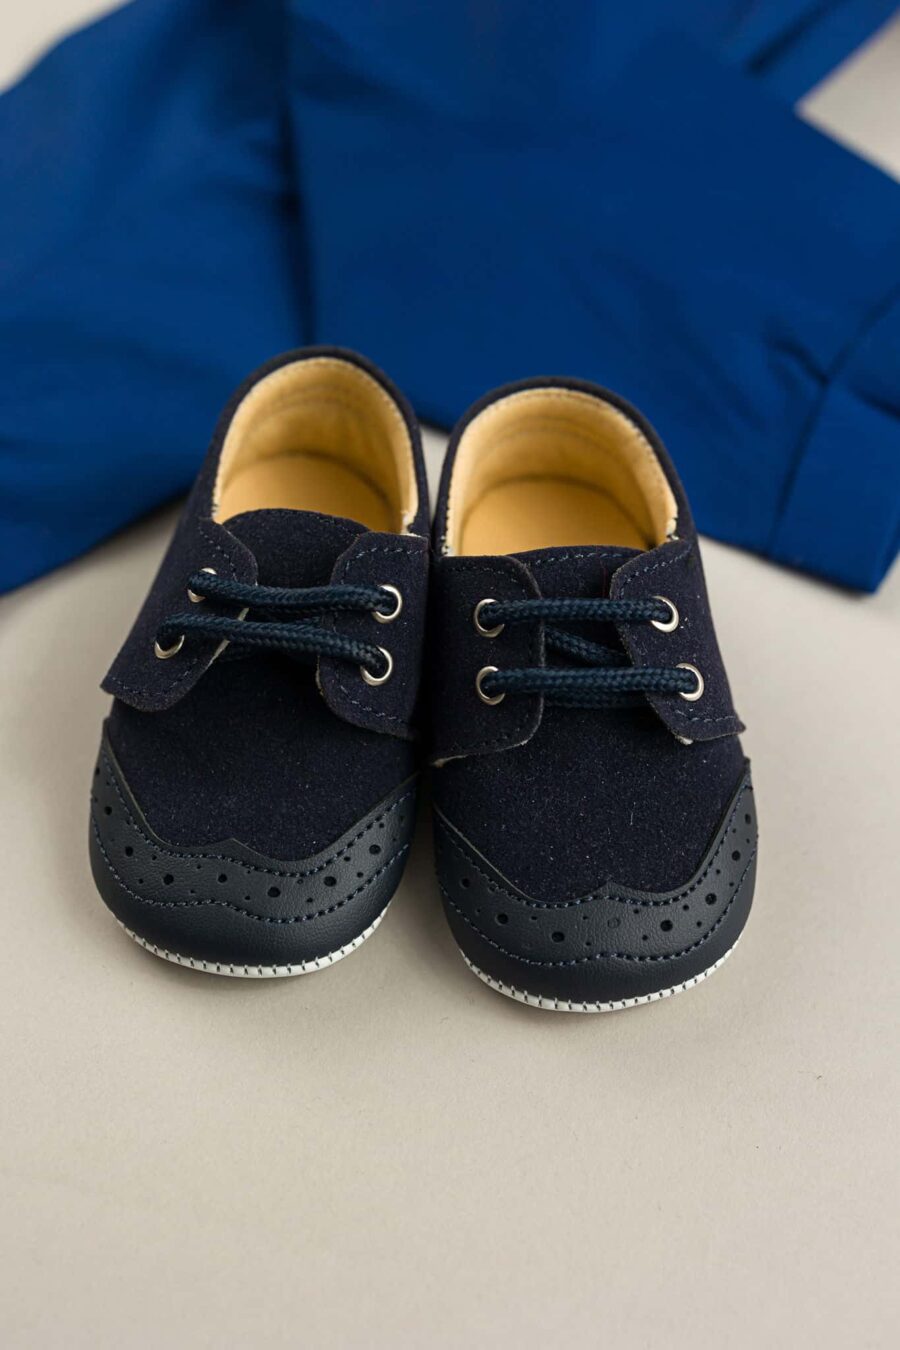 pantofi eleganti bebe navy